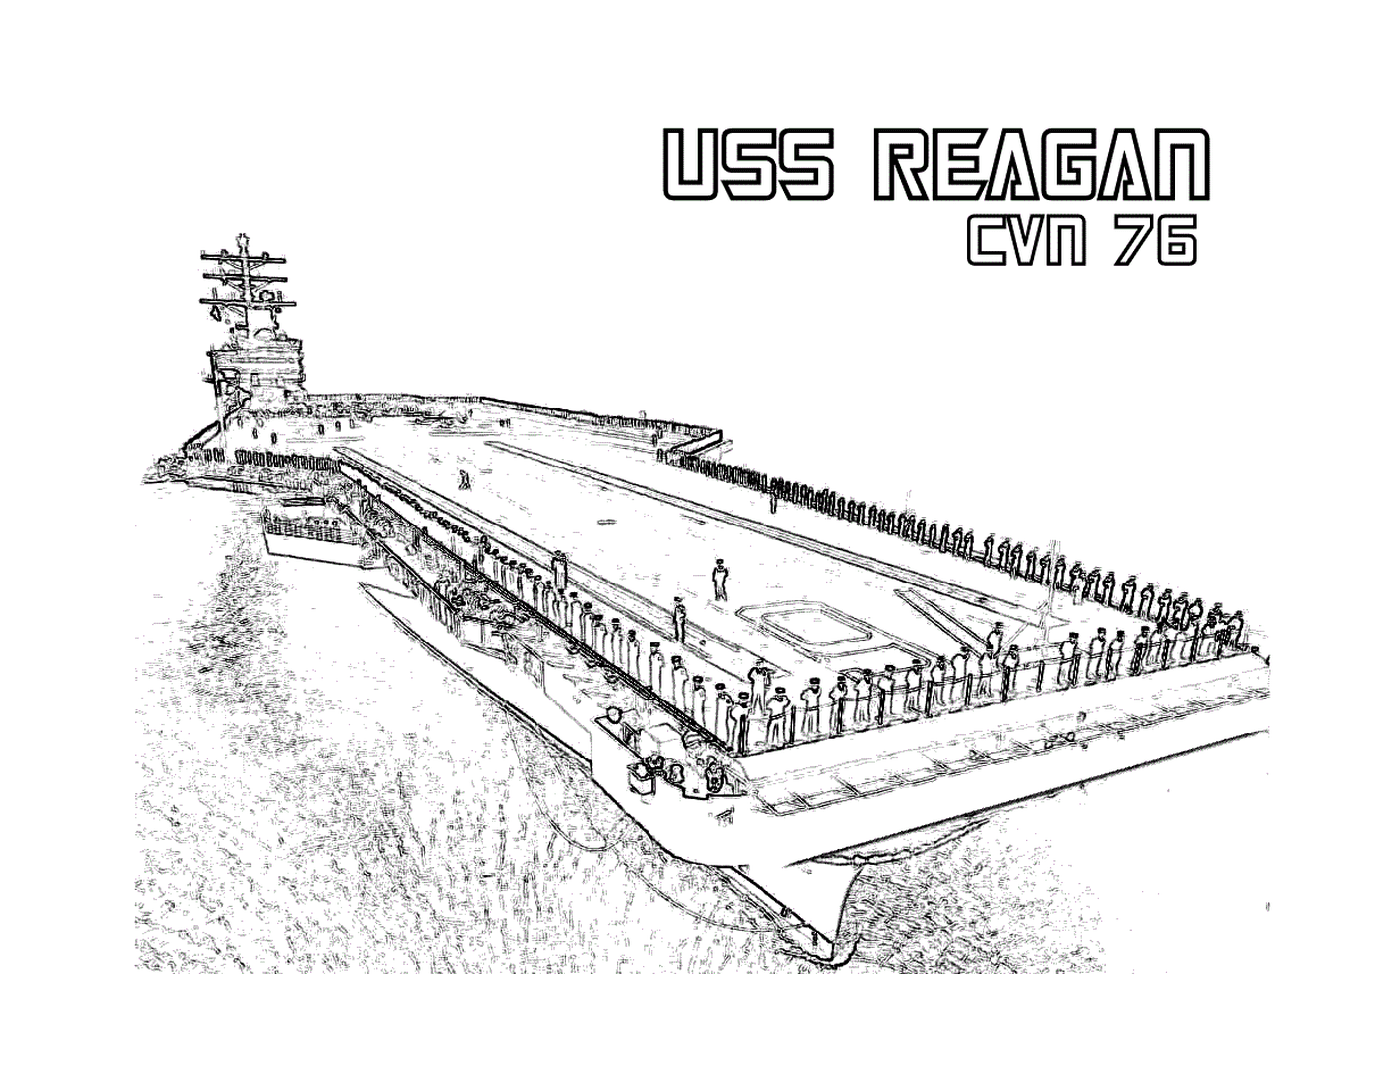  USS Reagan CVN-70 